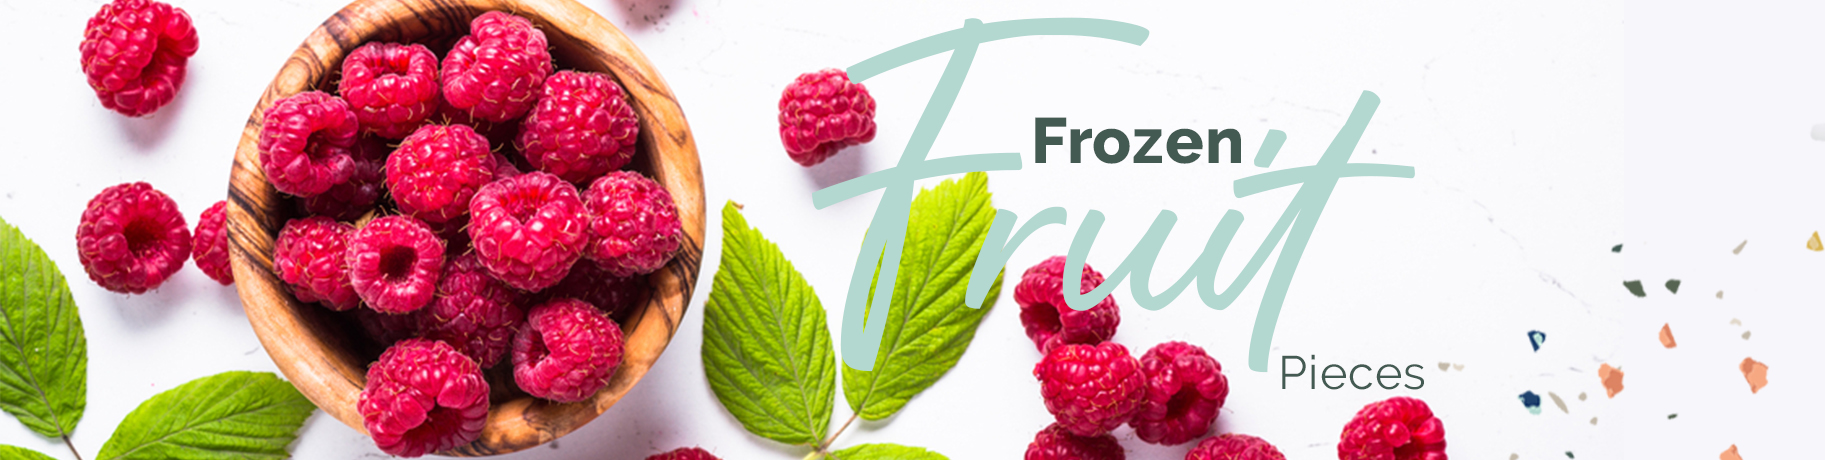 Frozen Fruit Pieces